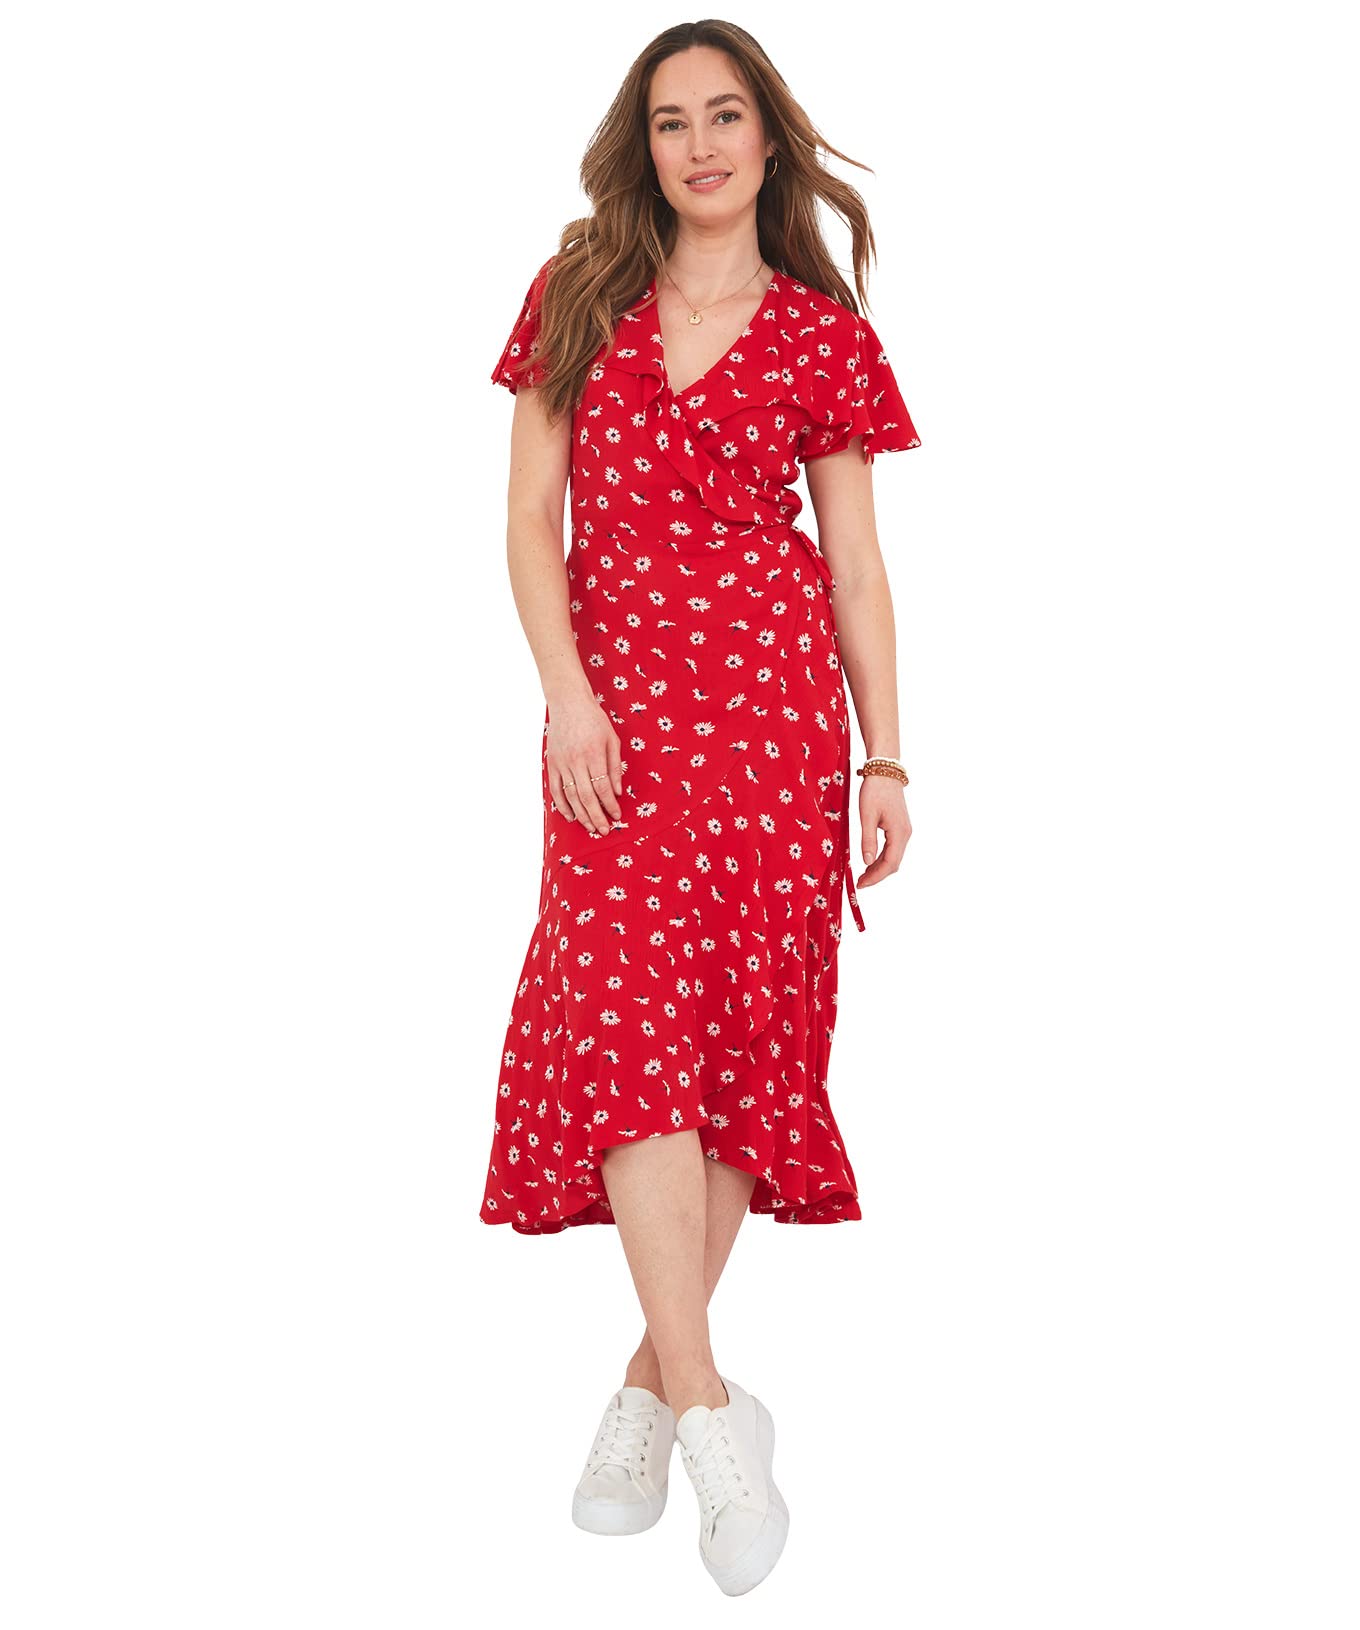 Joe Browns Damen Asymmetrisches Rüschenkleid Lässiges Kleid, rot, 38